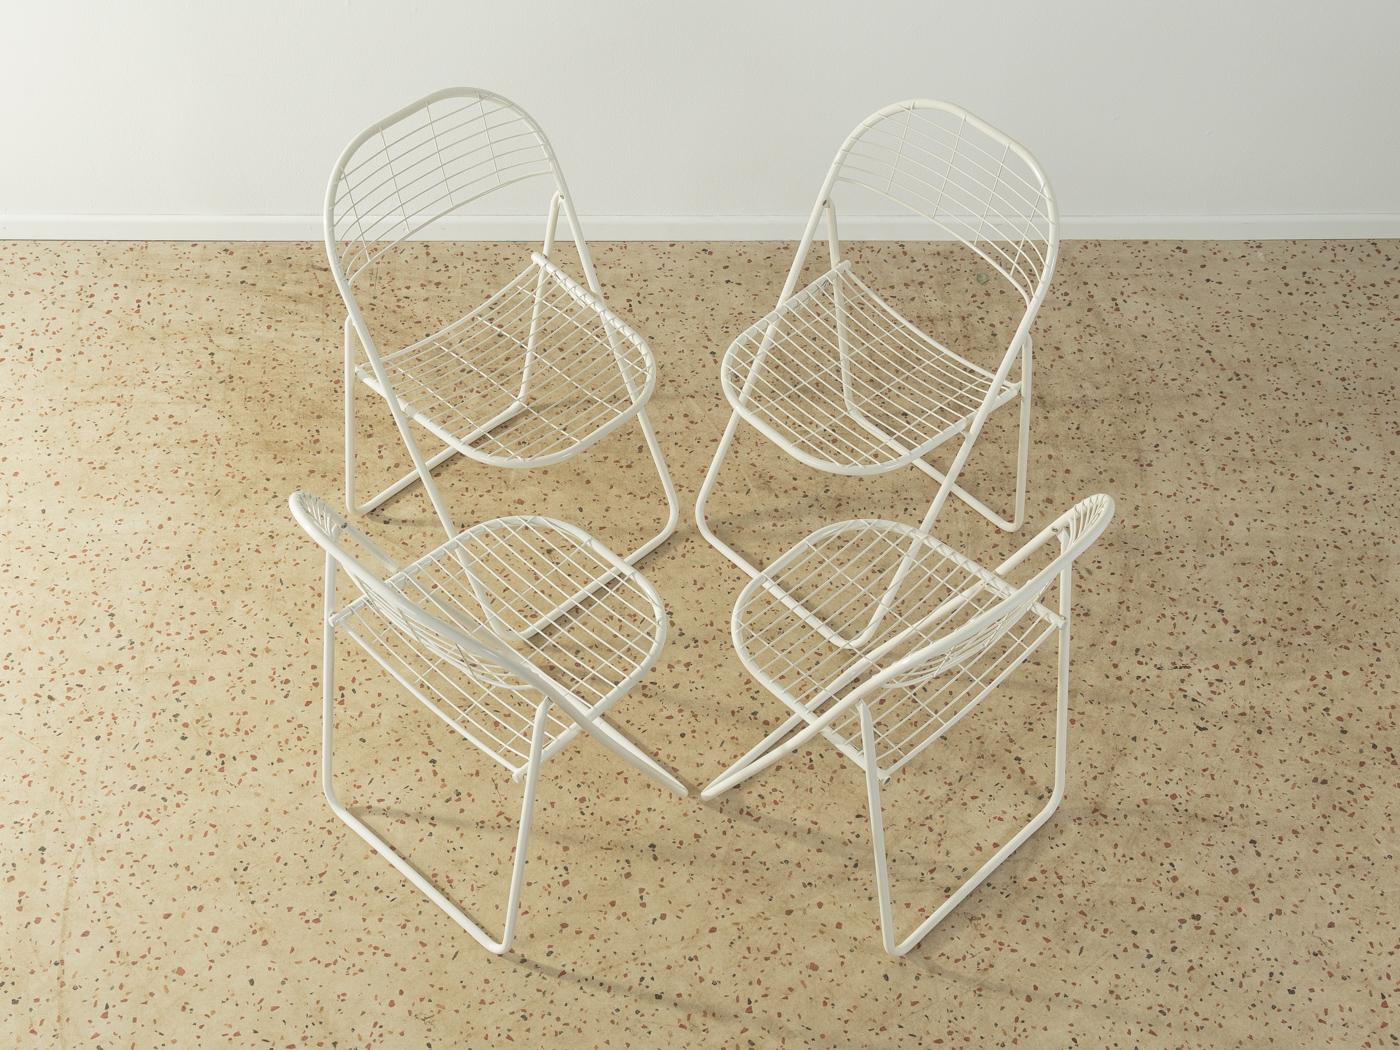 Chaises pliantes en métal Åland des années 1970 de Niels Gammelgaard pour Ikea, en blanc. L'offre comprend 4 chaises.

Caractéristiques de qualité :
 bonne exécution
 des matériaux de haute qualité
 Fabriqué en Suède. Design/One : Niels